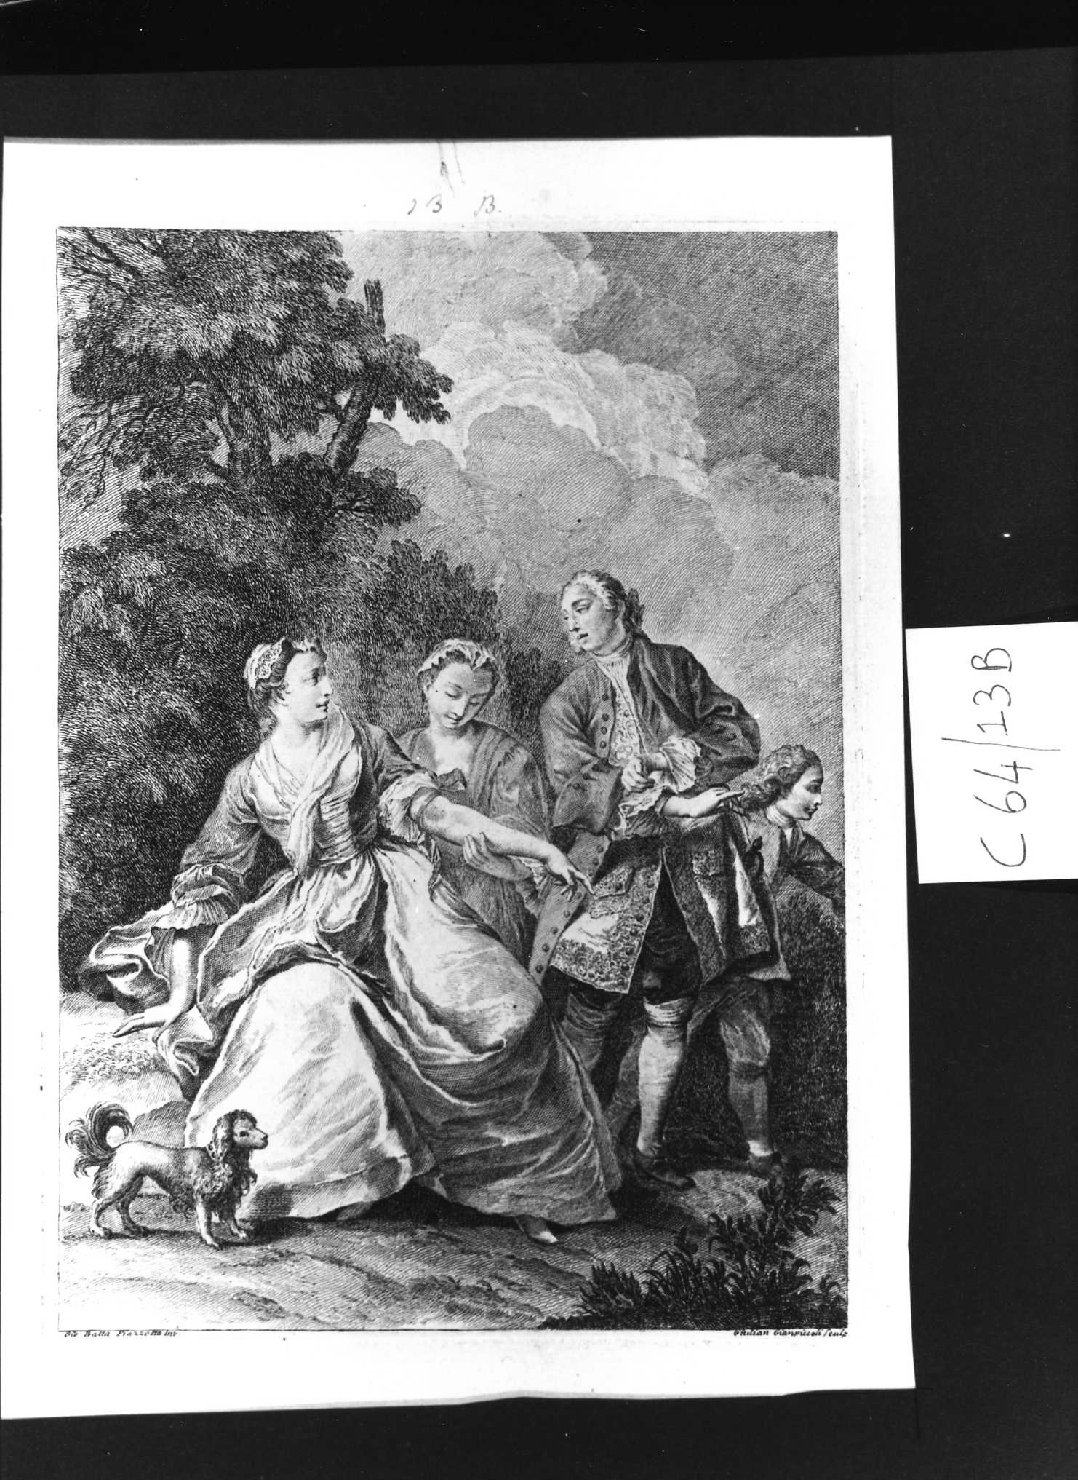 Il chirurgo e la dama, scena campestre con figure (stampa, serie) di Piazzetta Giovanni Battista, Giampiccoli Giuliano (sec. XVIII)